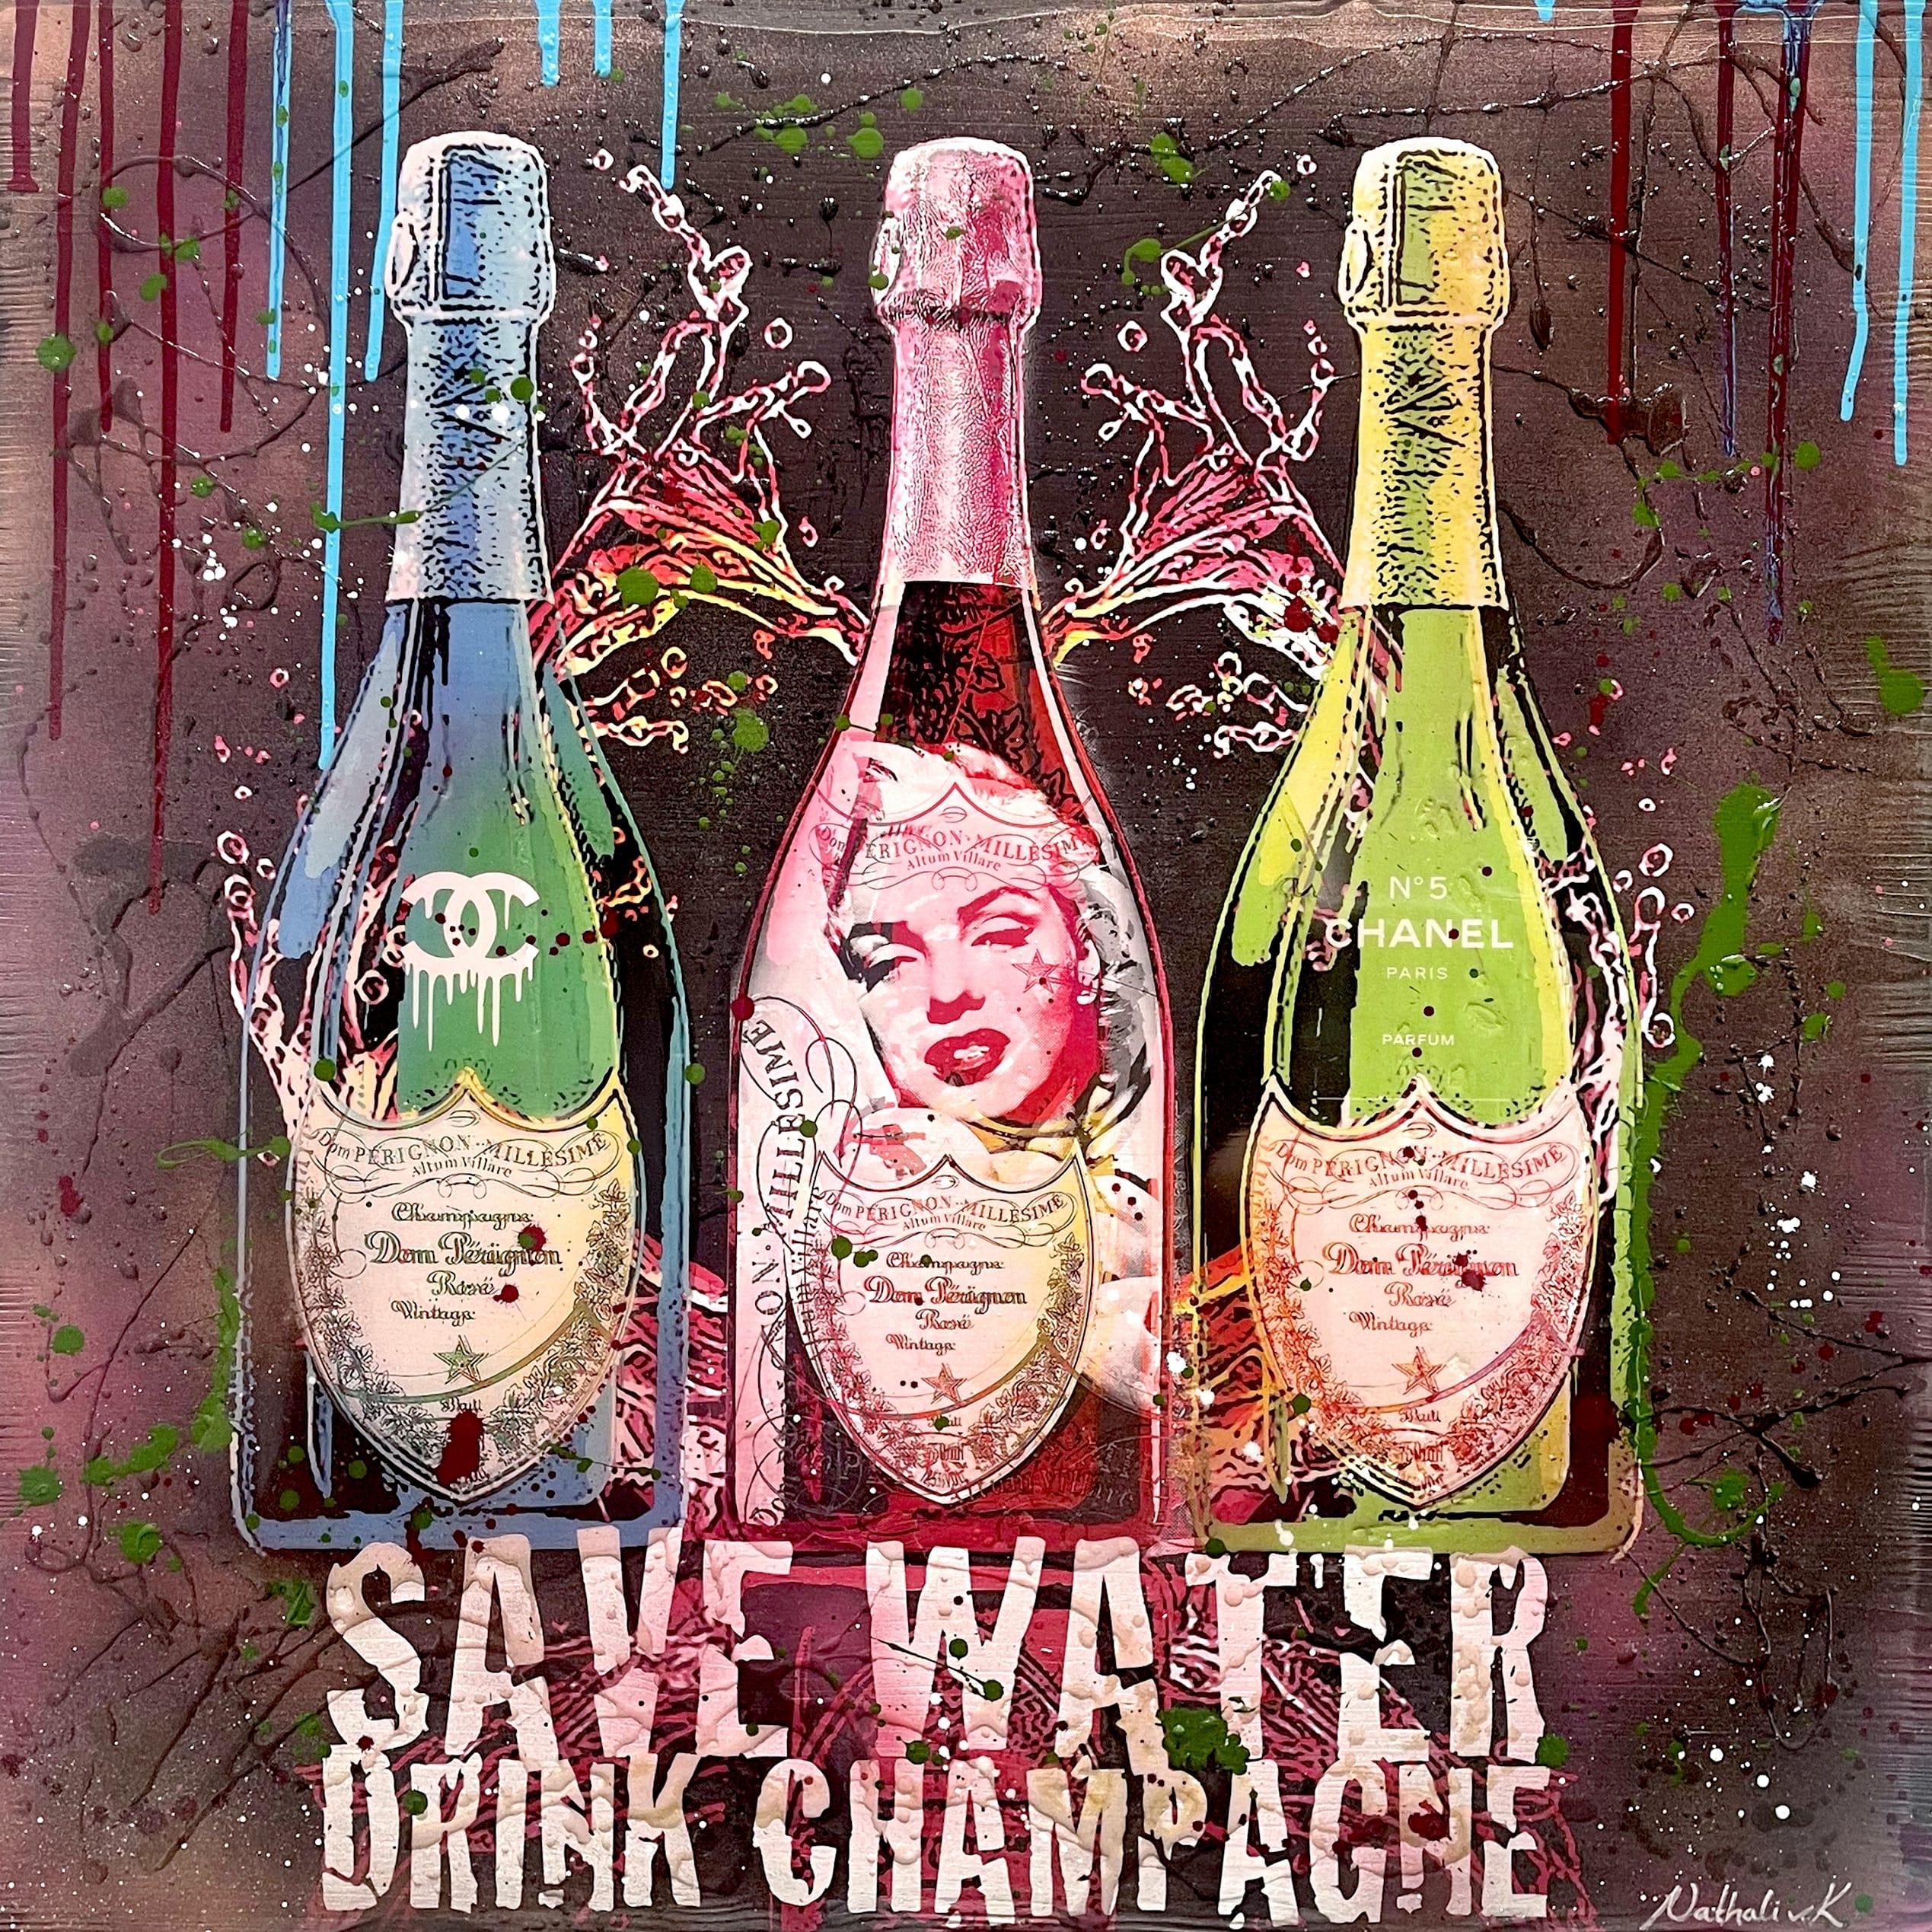 Nathali von Kretschmann Pop-Up Painting "Save Water Drink Champagne" tres botellas de Dom Perignon